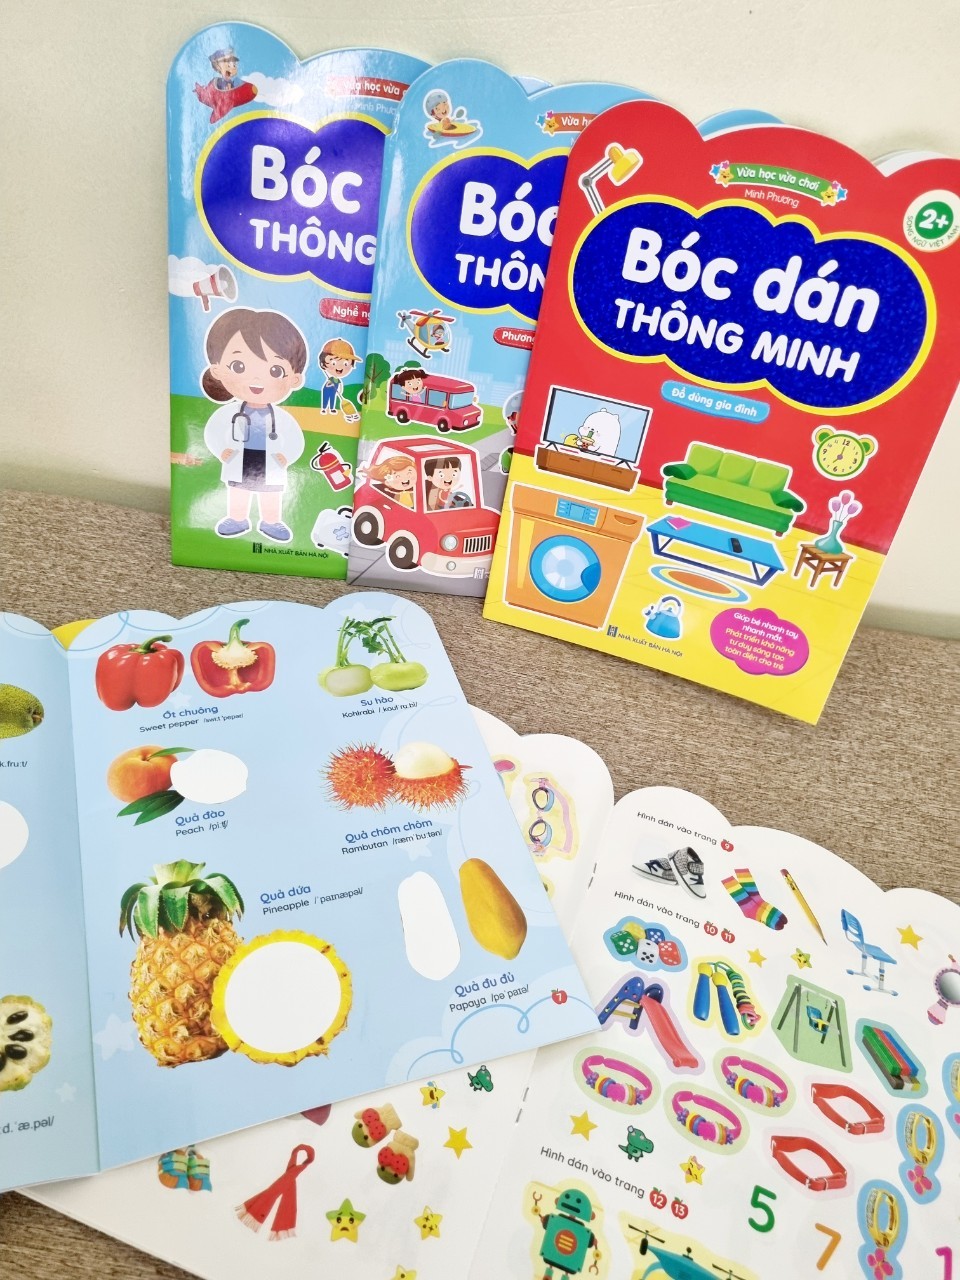 Bộ Sticker 6 cuốn - Bóc dán thông minh song ngữ Anh Việt (cho bé 2 - 6 tuổi)